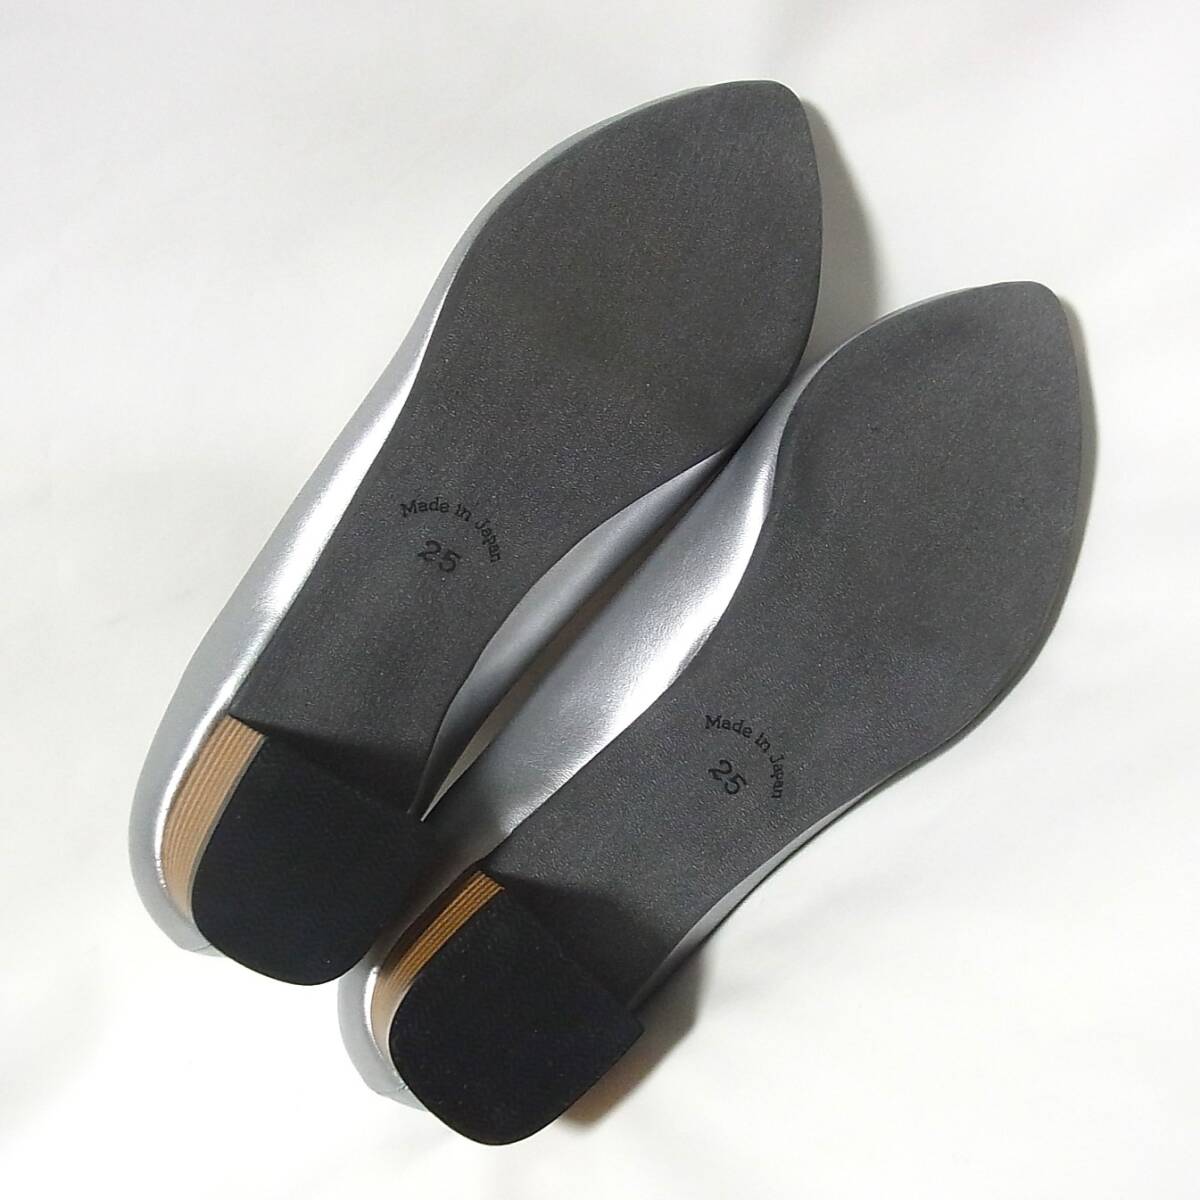  не использовался SUaSHIs way si- обувь in Kobe туфли-лодочки 25.0cm/25cm действующий товар * сделано в Японии серебряный цвет коричневый n ключ каблук 3.5cm